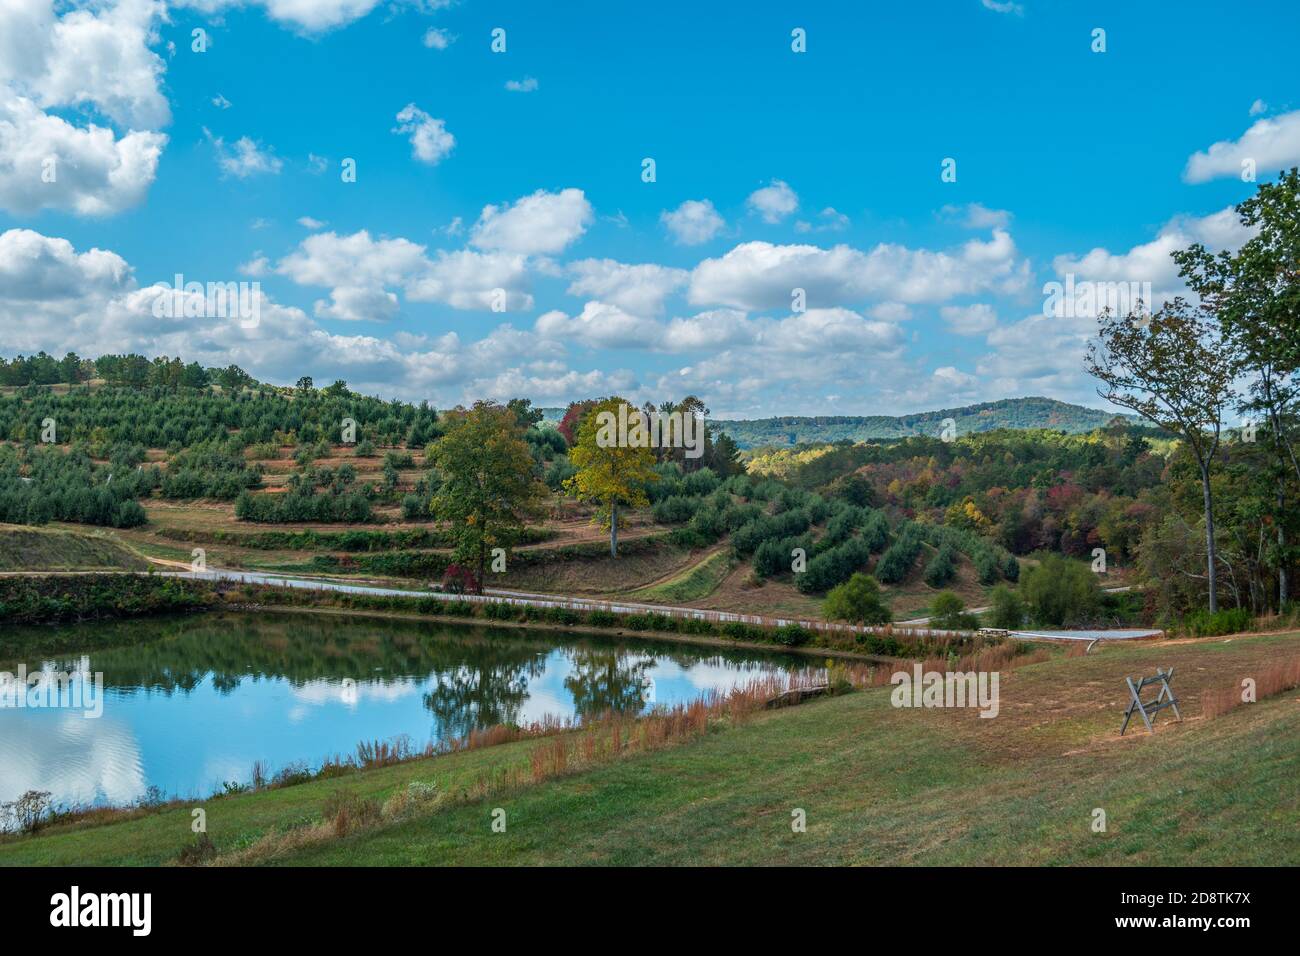 Vue panoramique sur un verger de pommes avec des rangées de pommes les arbres et les montagnes en arrière-plan et un grand bassin d'irrigation reflétant le ciel bleu avec c Banque D'Images